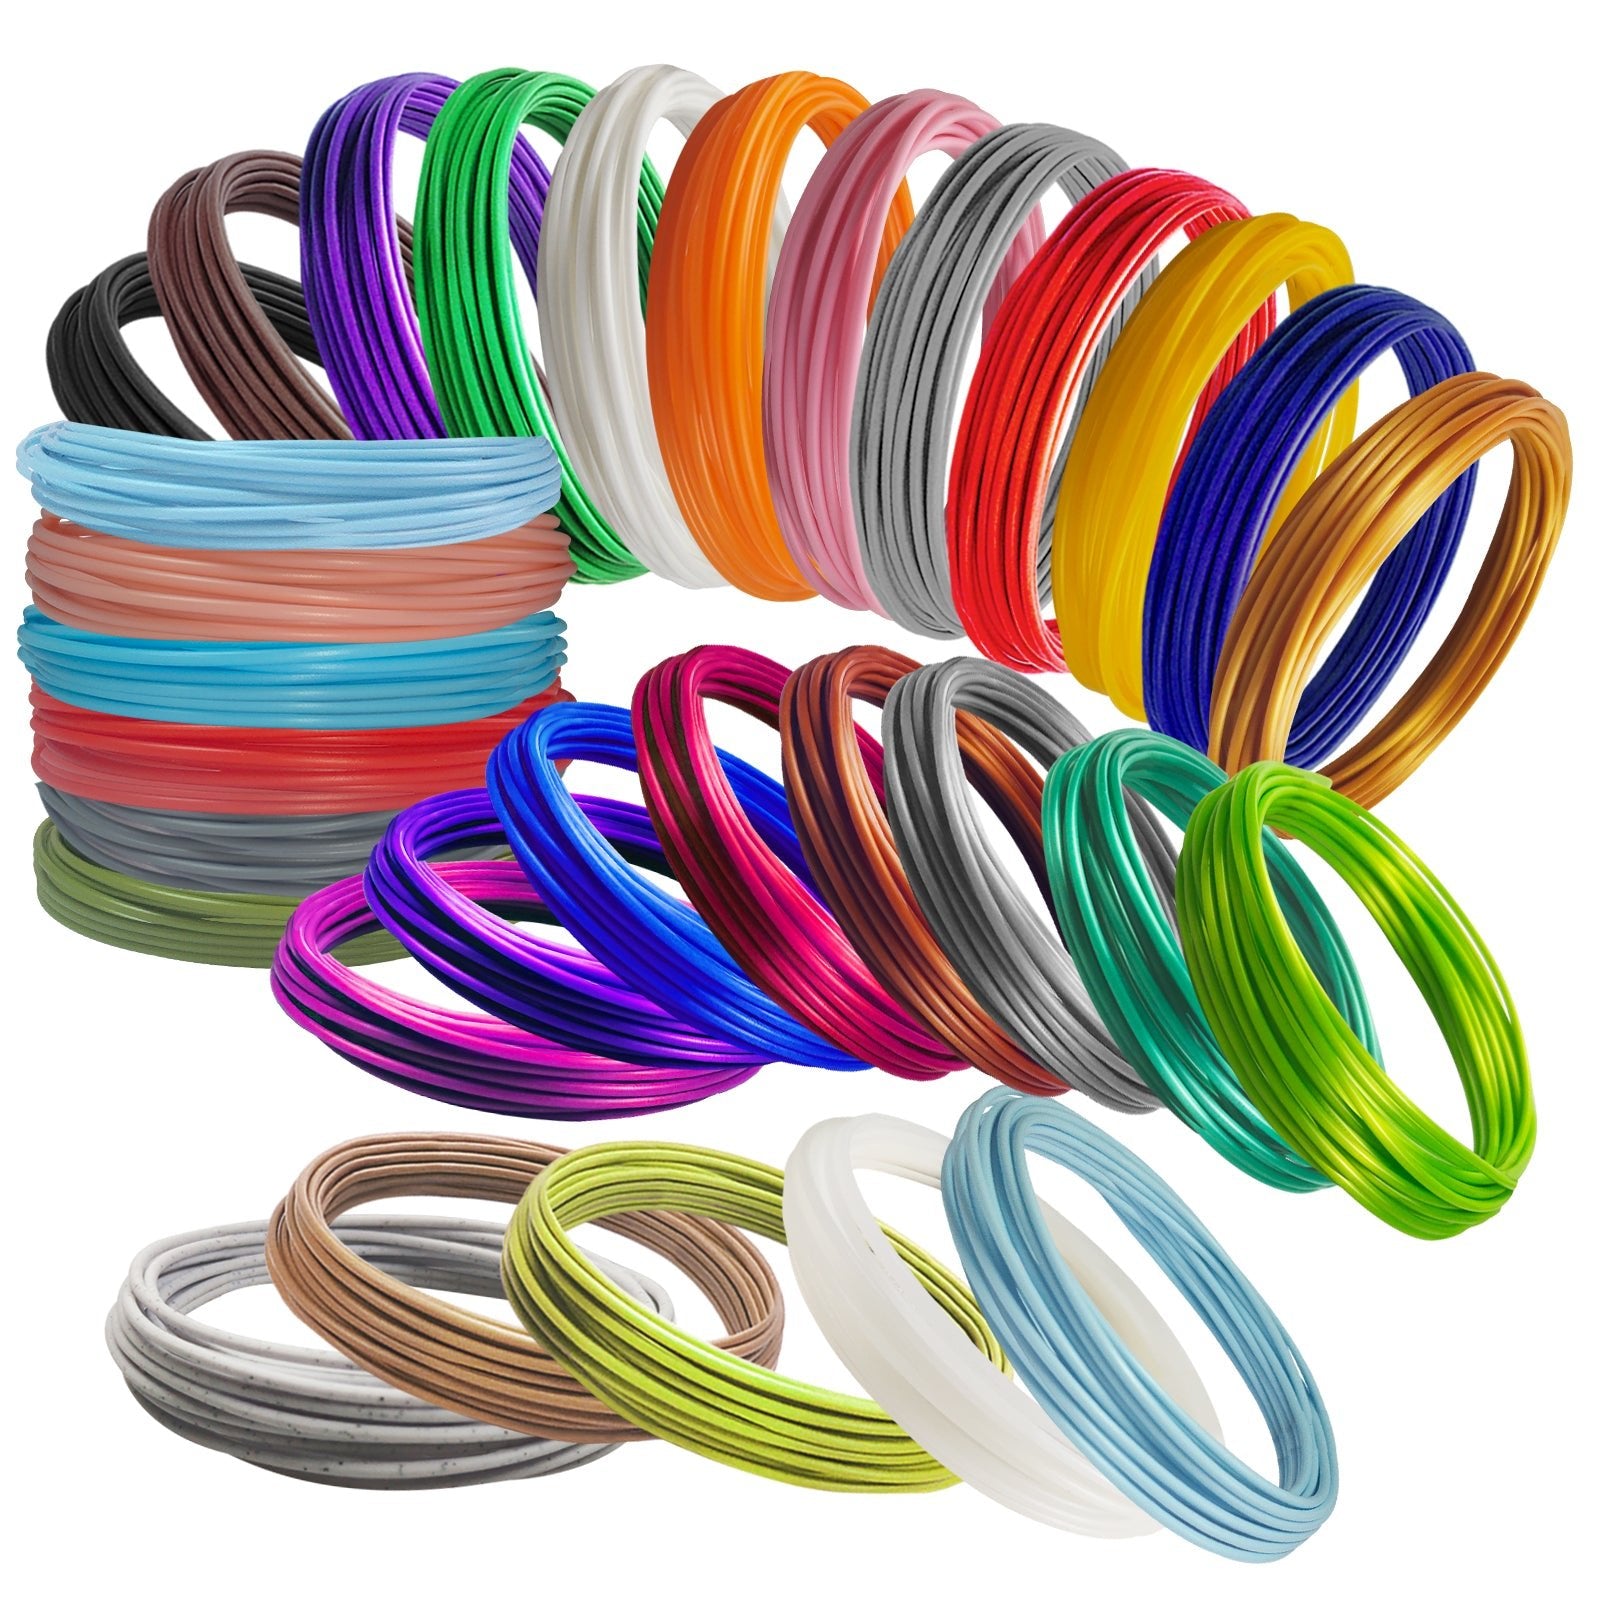  Kretrum 3D Pen Filament Refills 18 Colors, 3D Printing